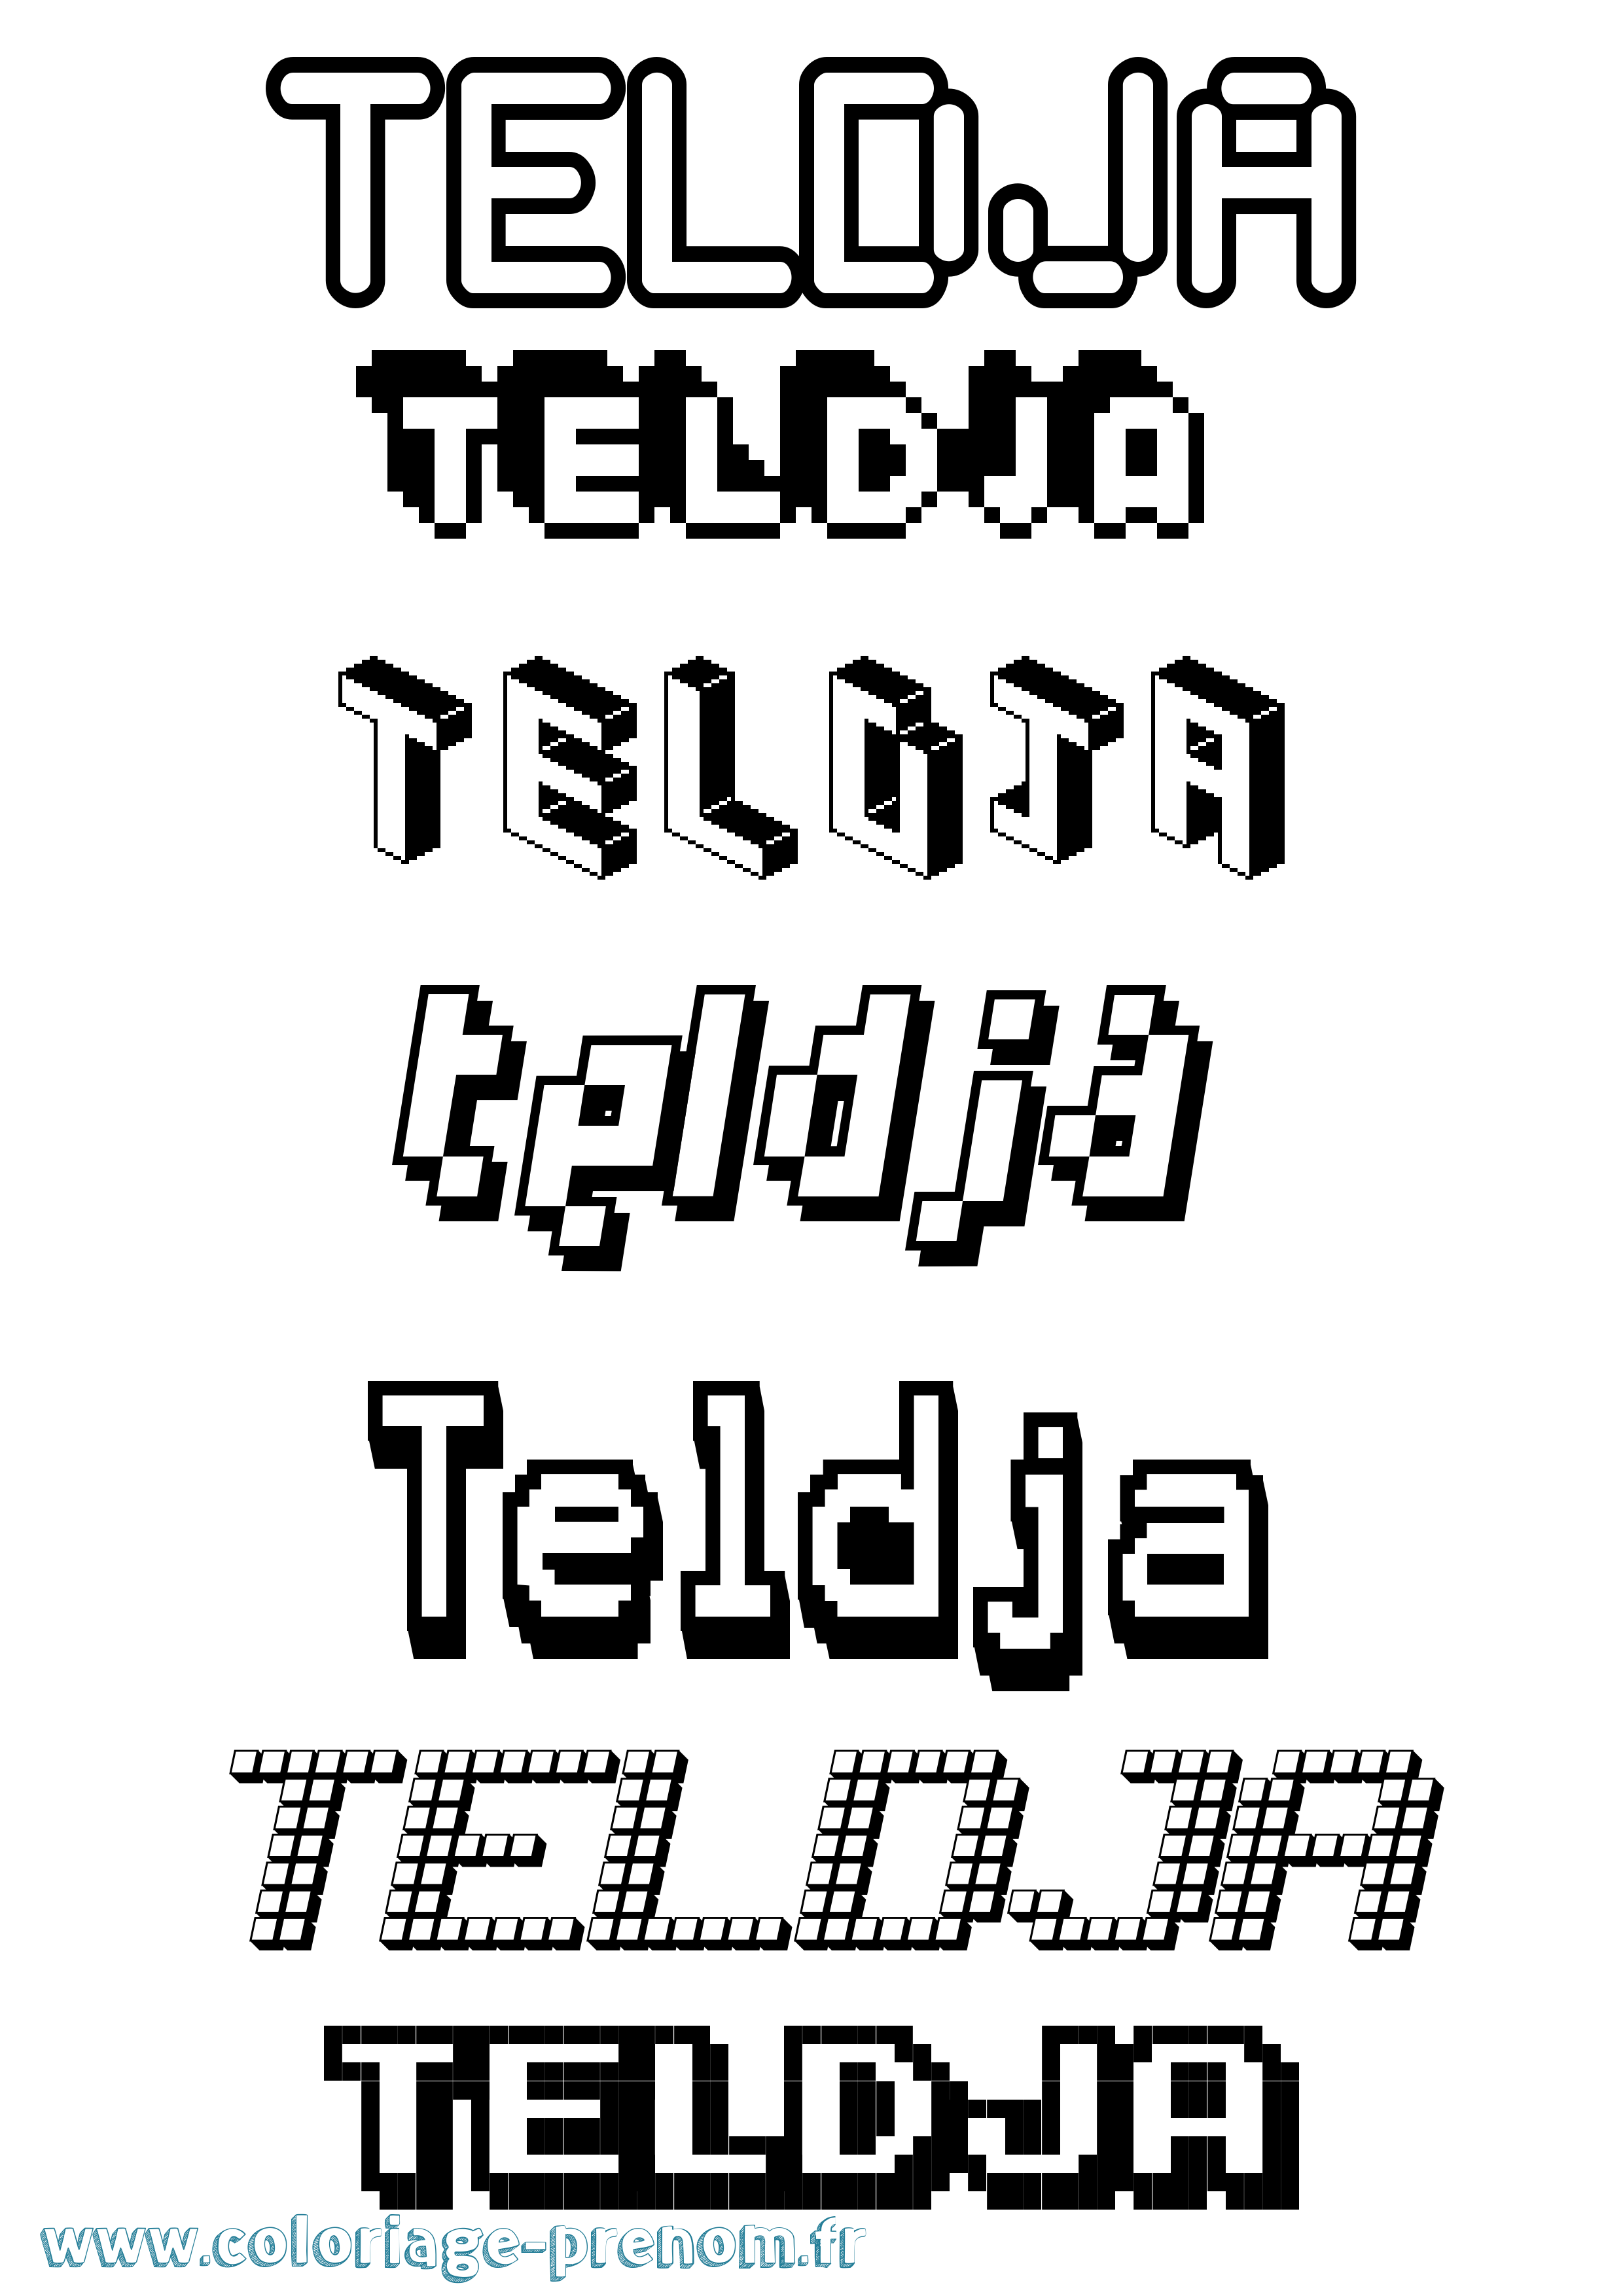 Coloriage prénom Teldja Pixel